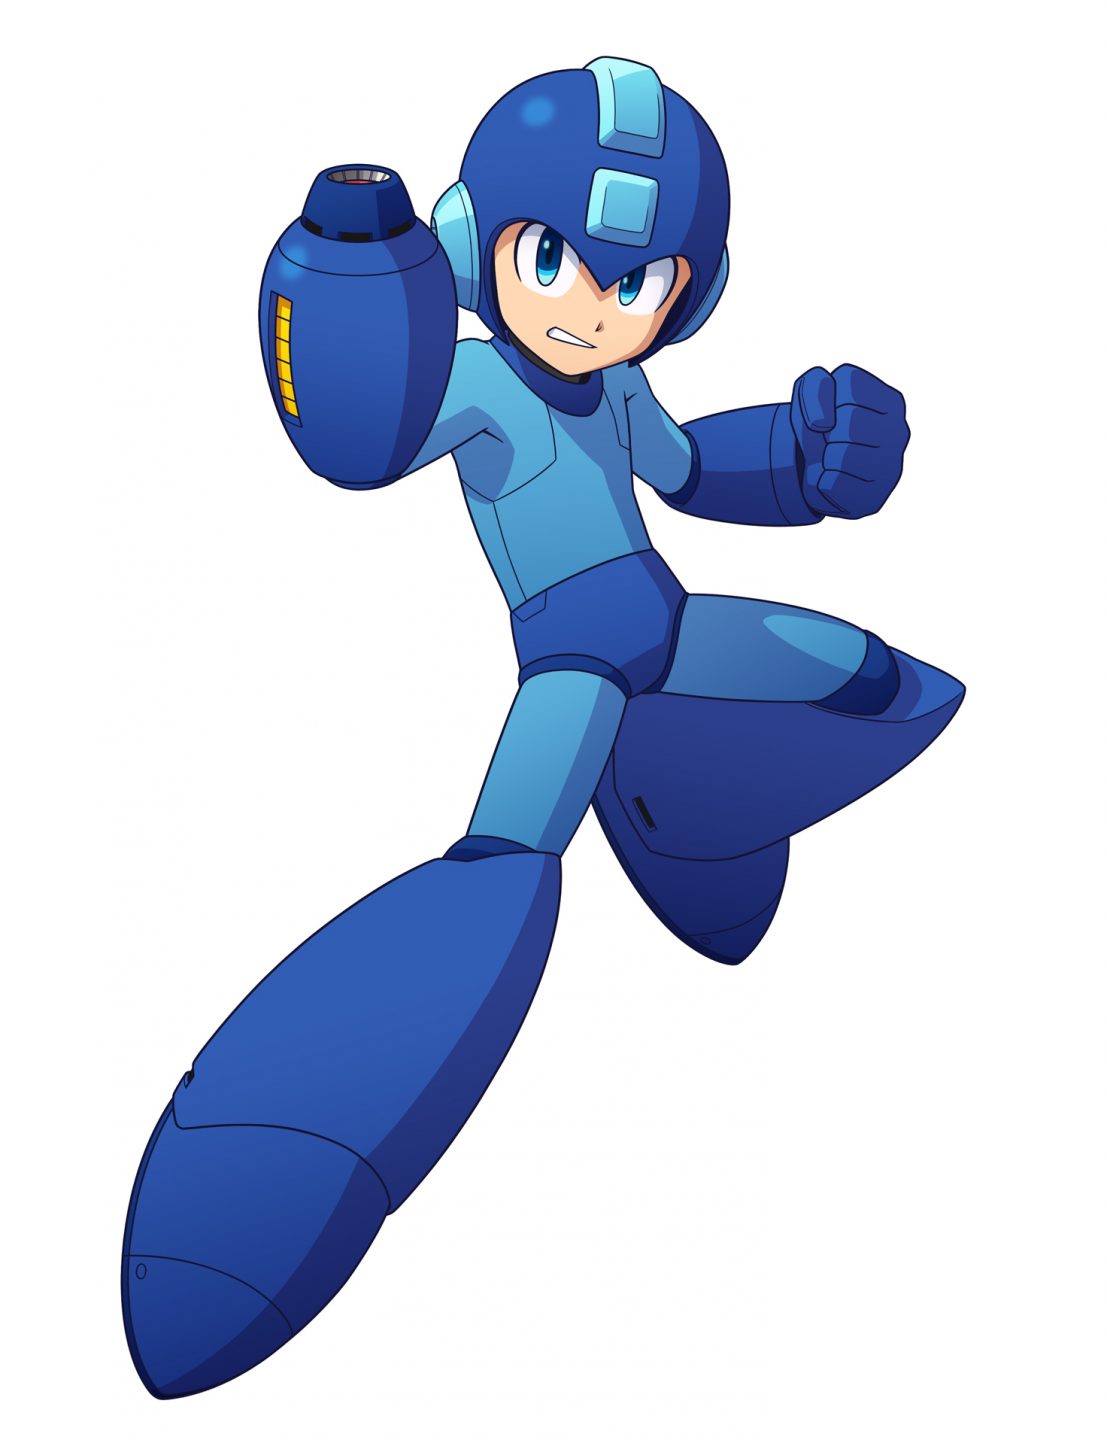 Mega Man 11 still (Capcom)